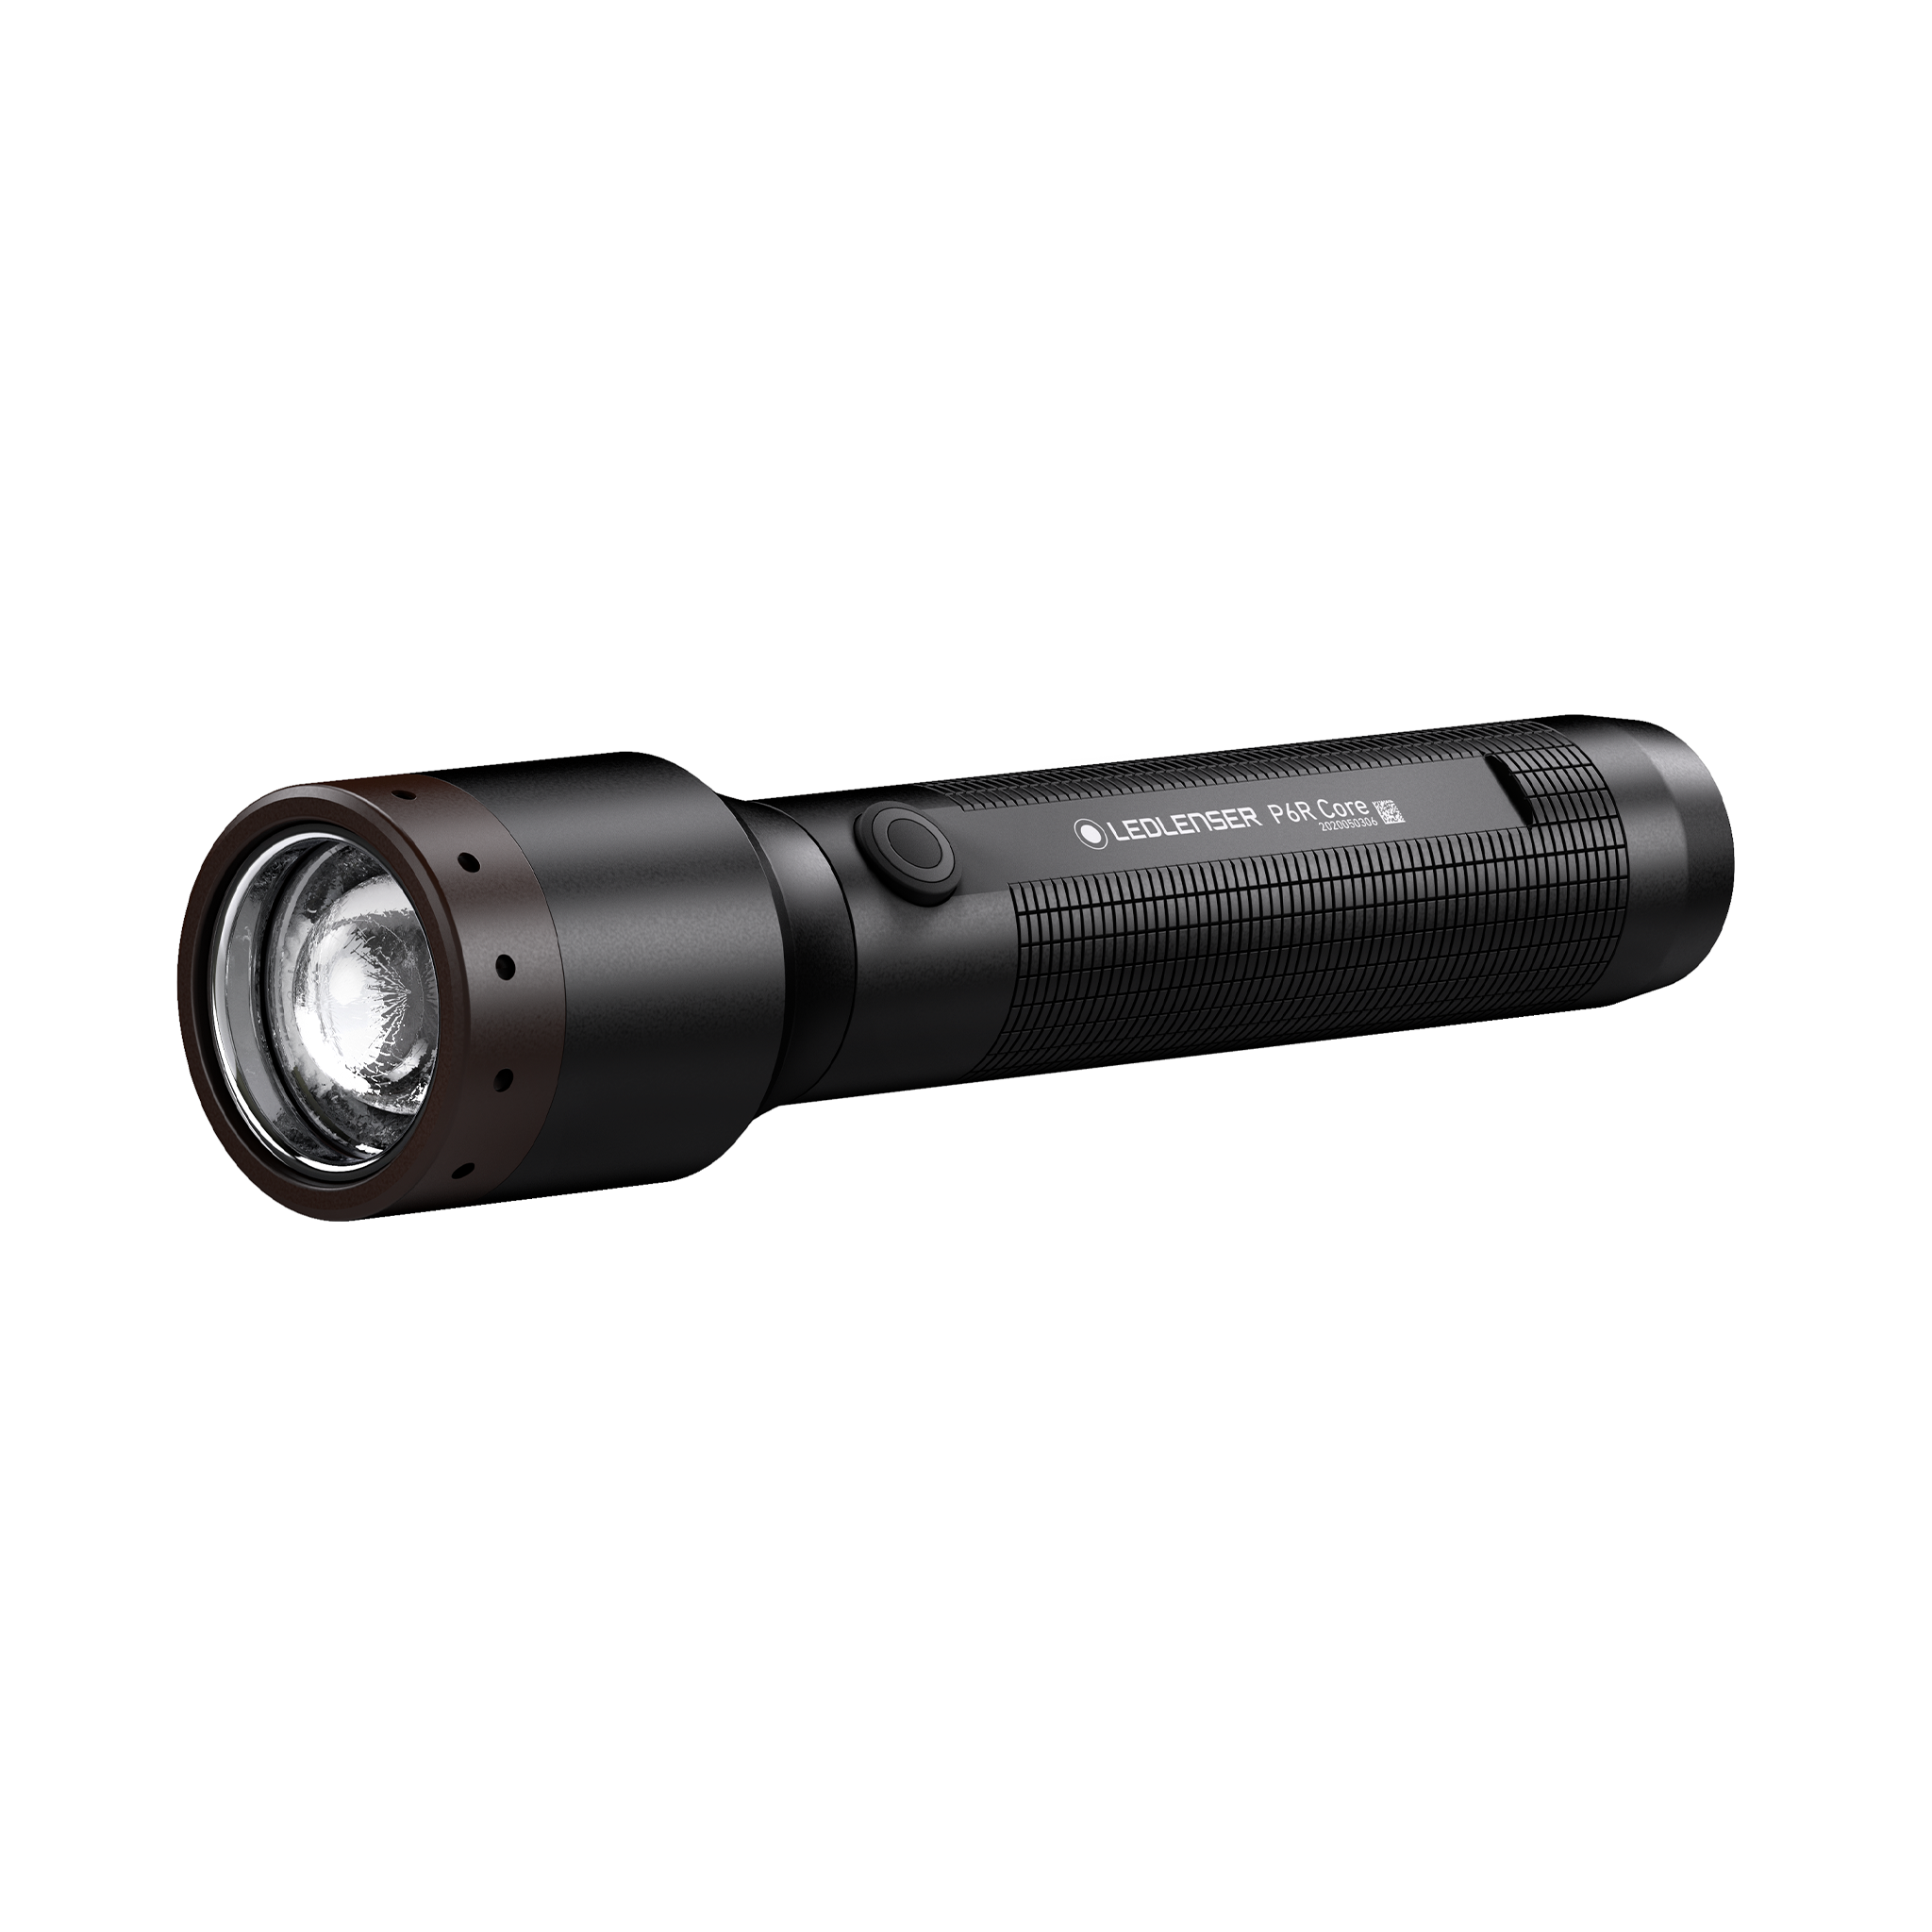 Lampe torche rechargeable Ledlenser P6R Core